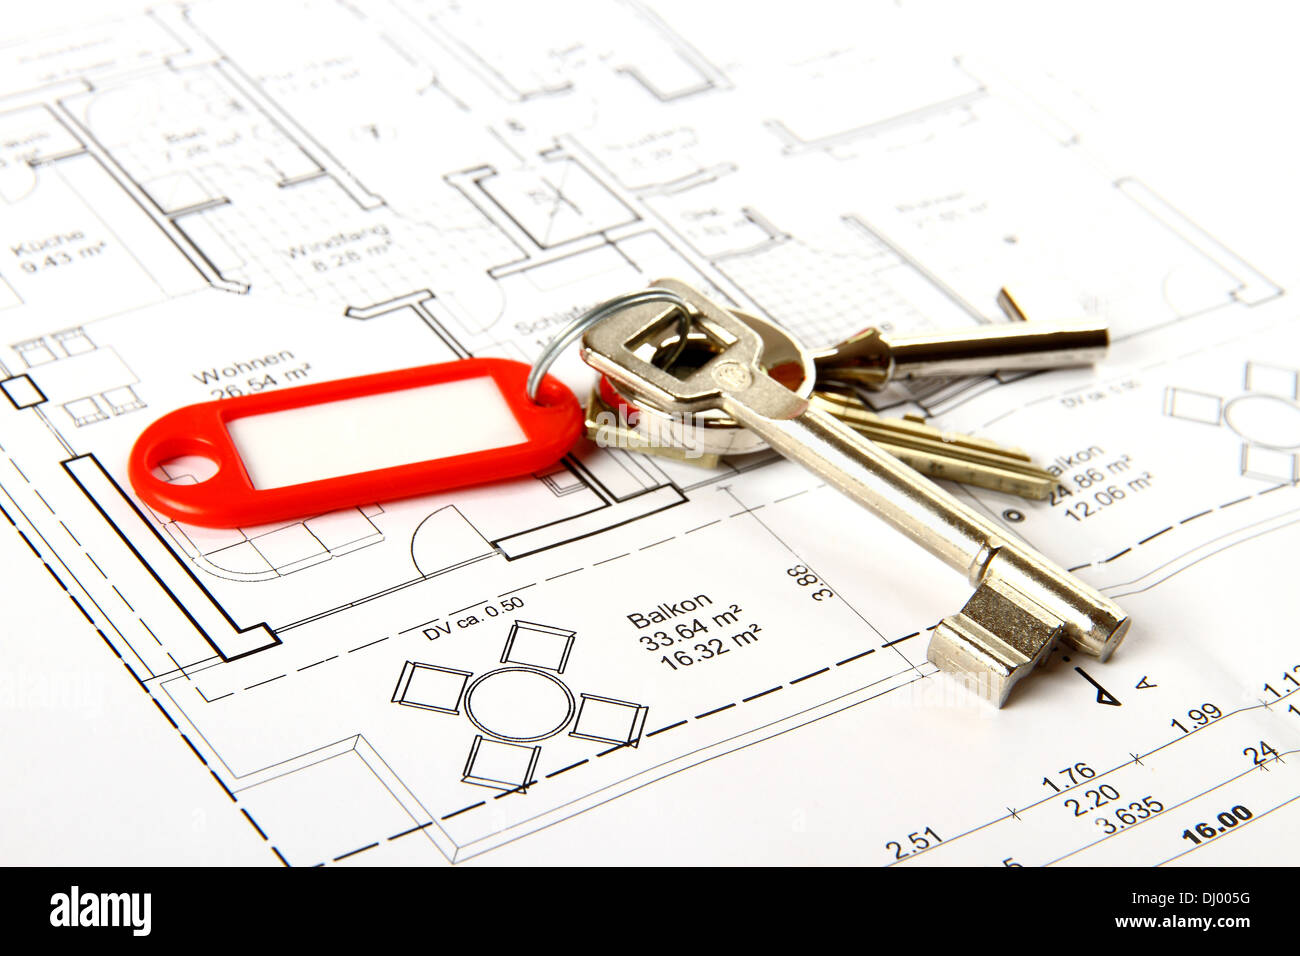 Mazzo di chiavi con portachiavi rosso nella costruzione di disegno, close up Foto Stock